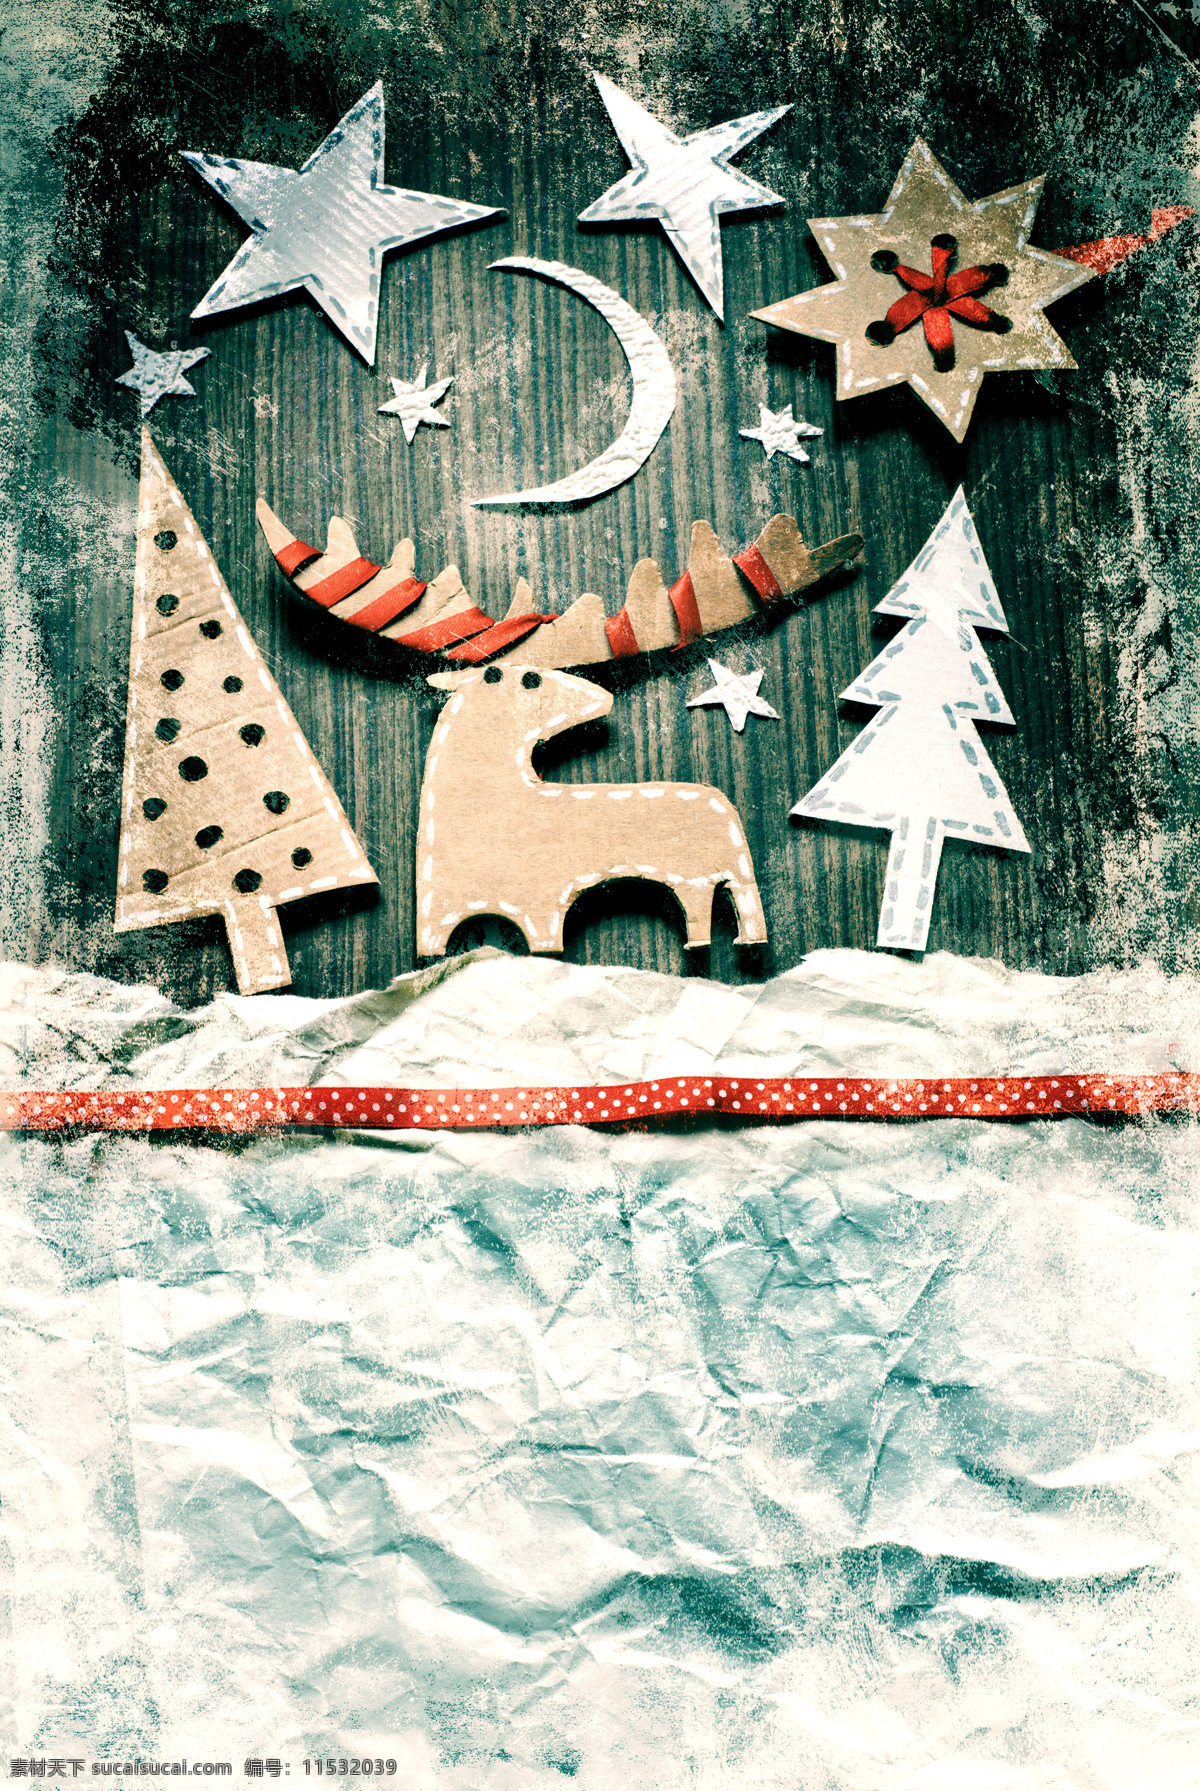 圣诞节 卡片 圣诞节背景 新年背景 圣诞树 麋鹿 圣诞节贺卡 圣诞节卡片 底纹边框 底纹背景 纸张背景 圣诞节图片 生活百科